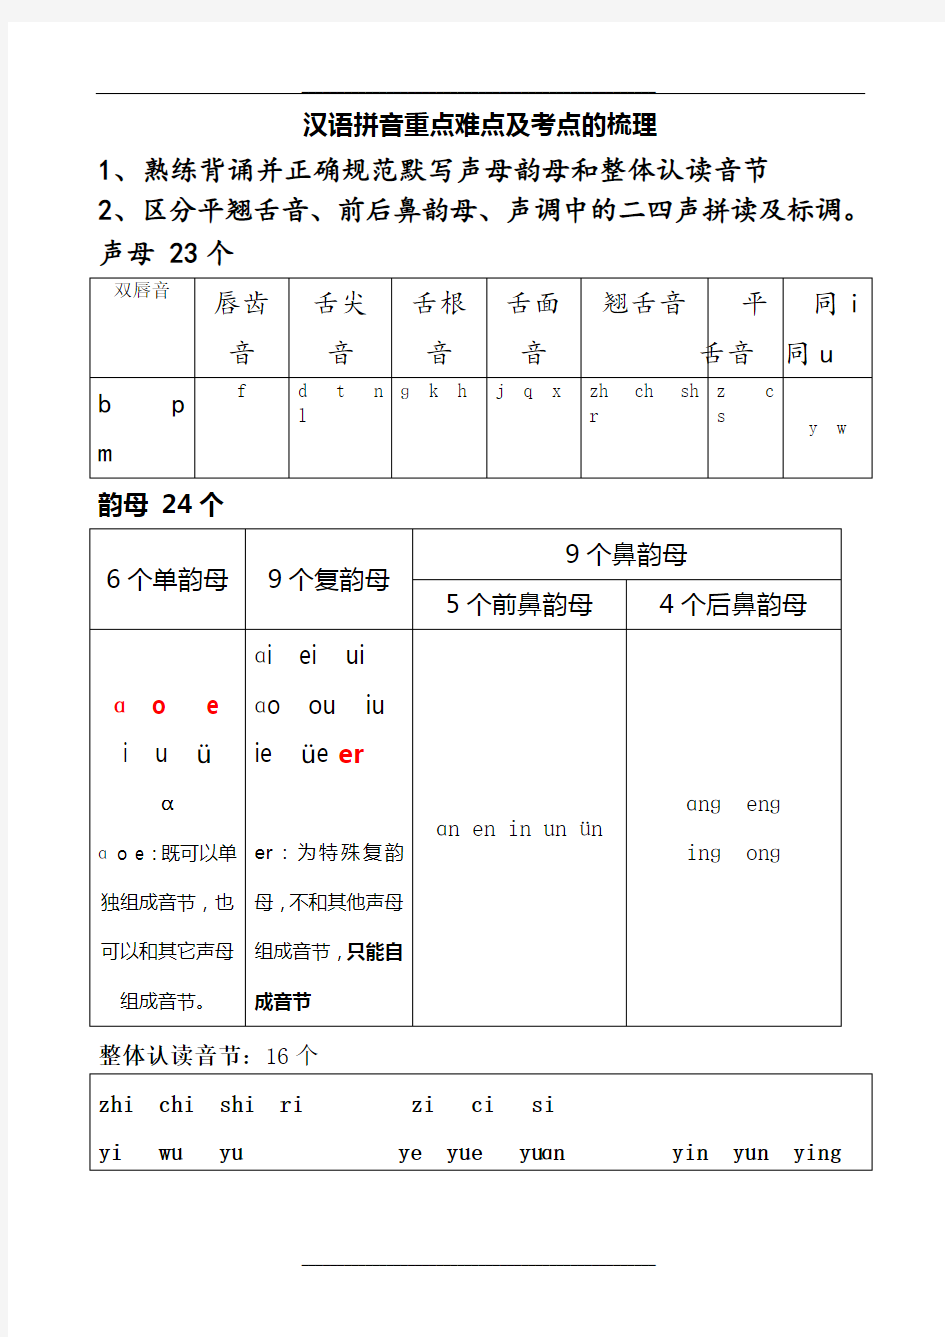 汉语拼音重点难点及考点的梳理